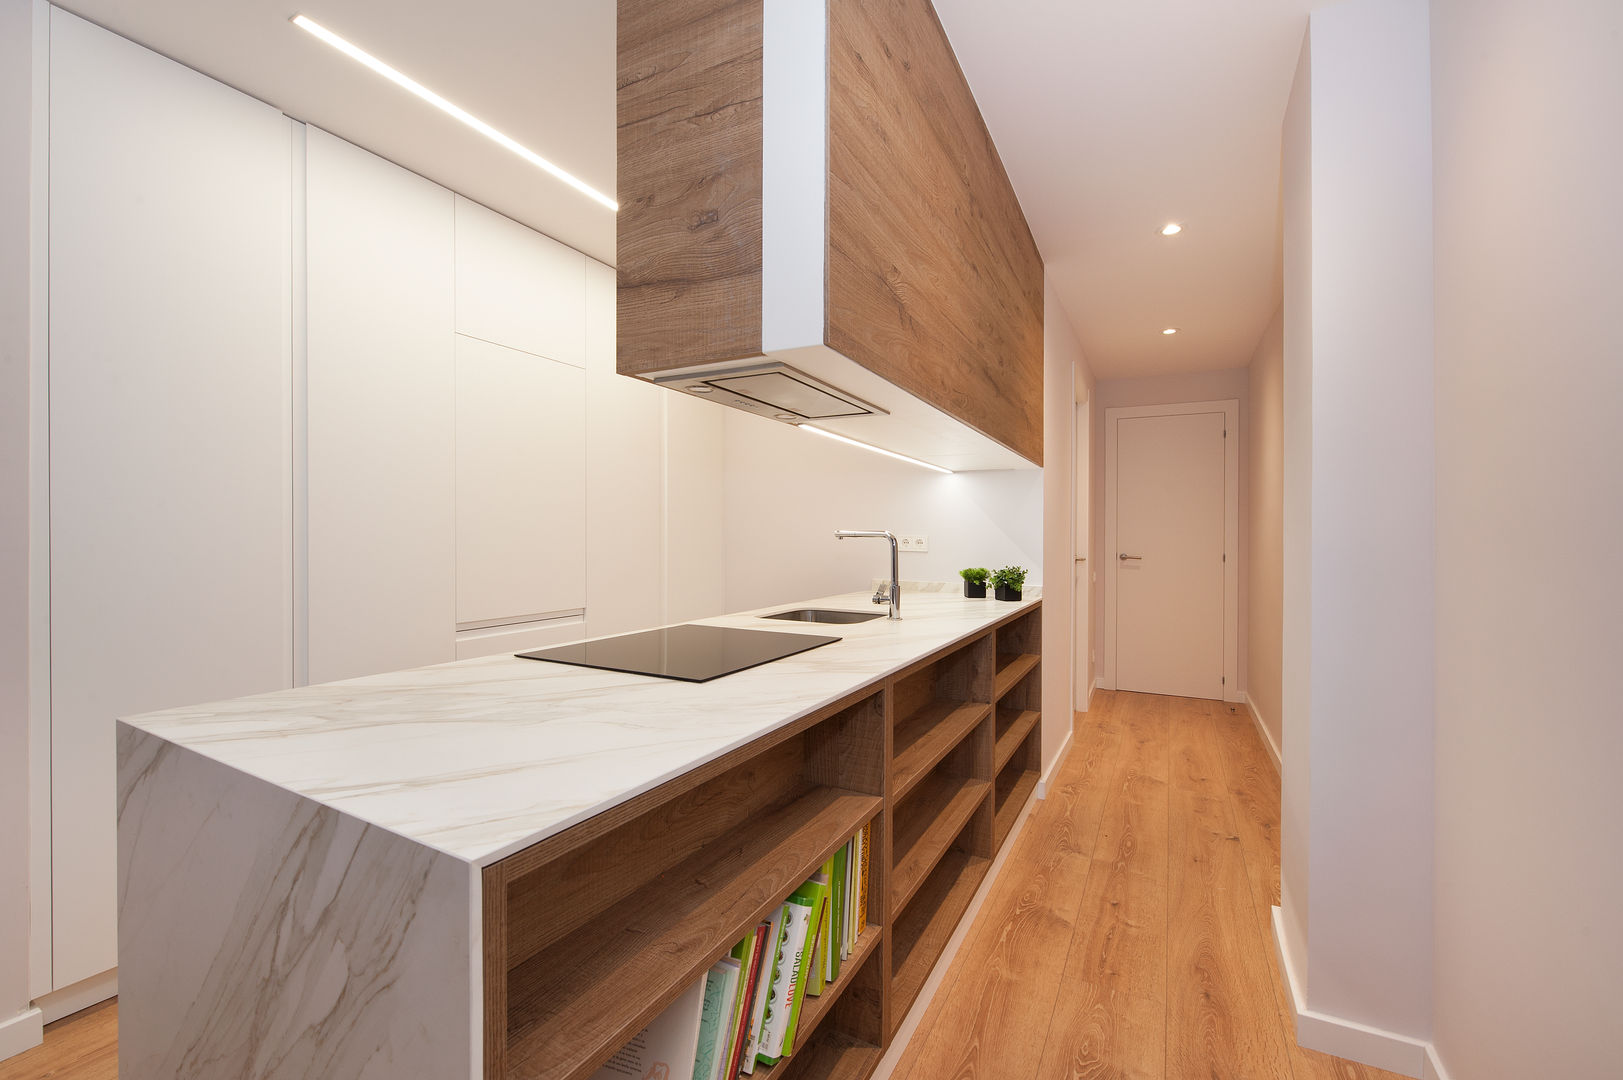 Restaurar la Armonía y el Equilibrio con el Feng Shui en este Apartamento en Barcelona, Cristina Jové Cristina Jové Modern style kitchen Cabinets & shelves